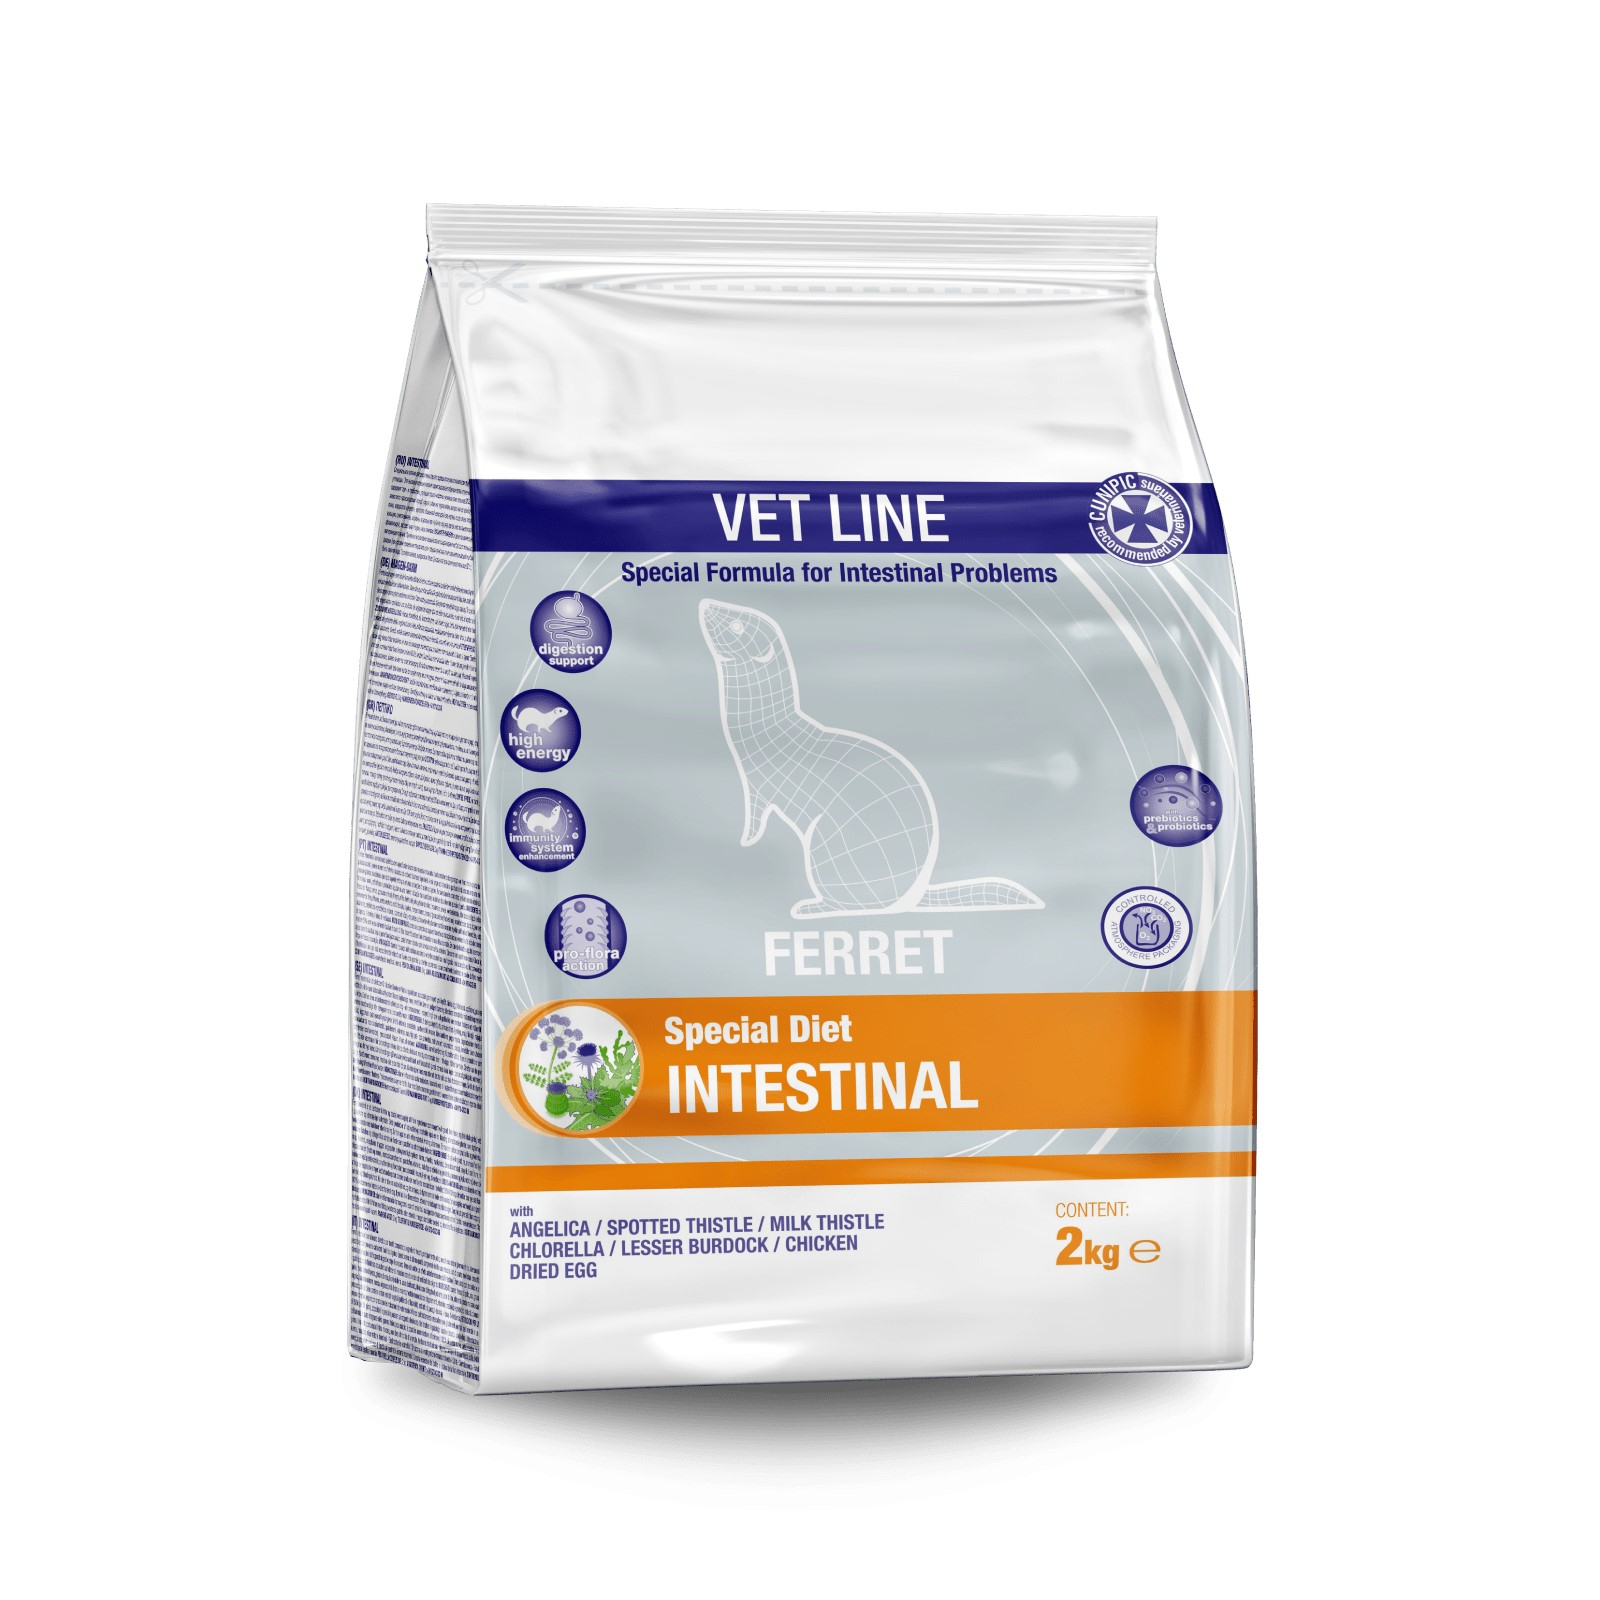 Cunipic Vetline Intestinal para hurones con problemas intestinales